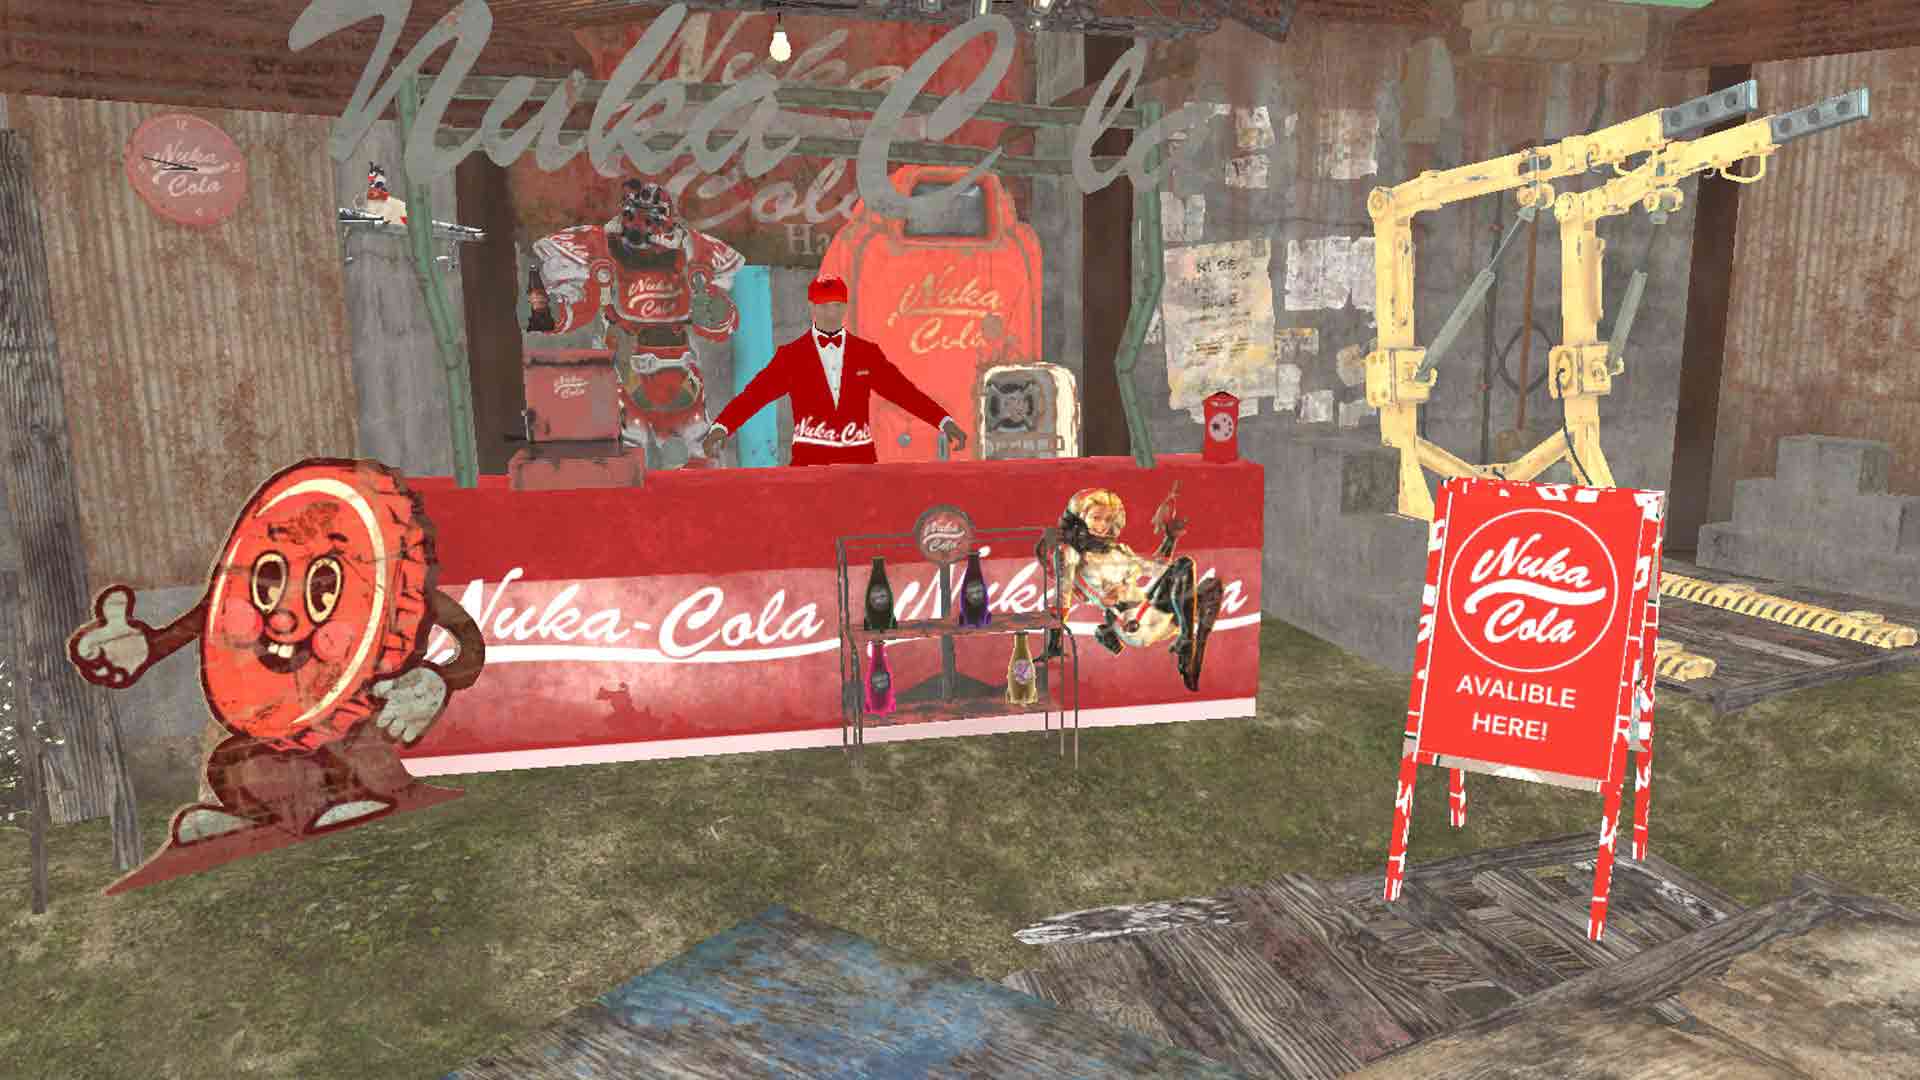 fallout 4 nuka cola mod